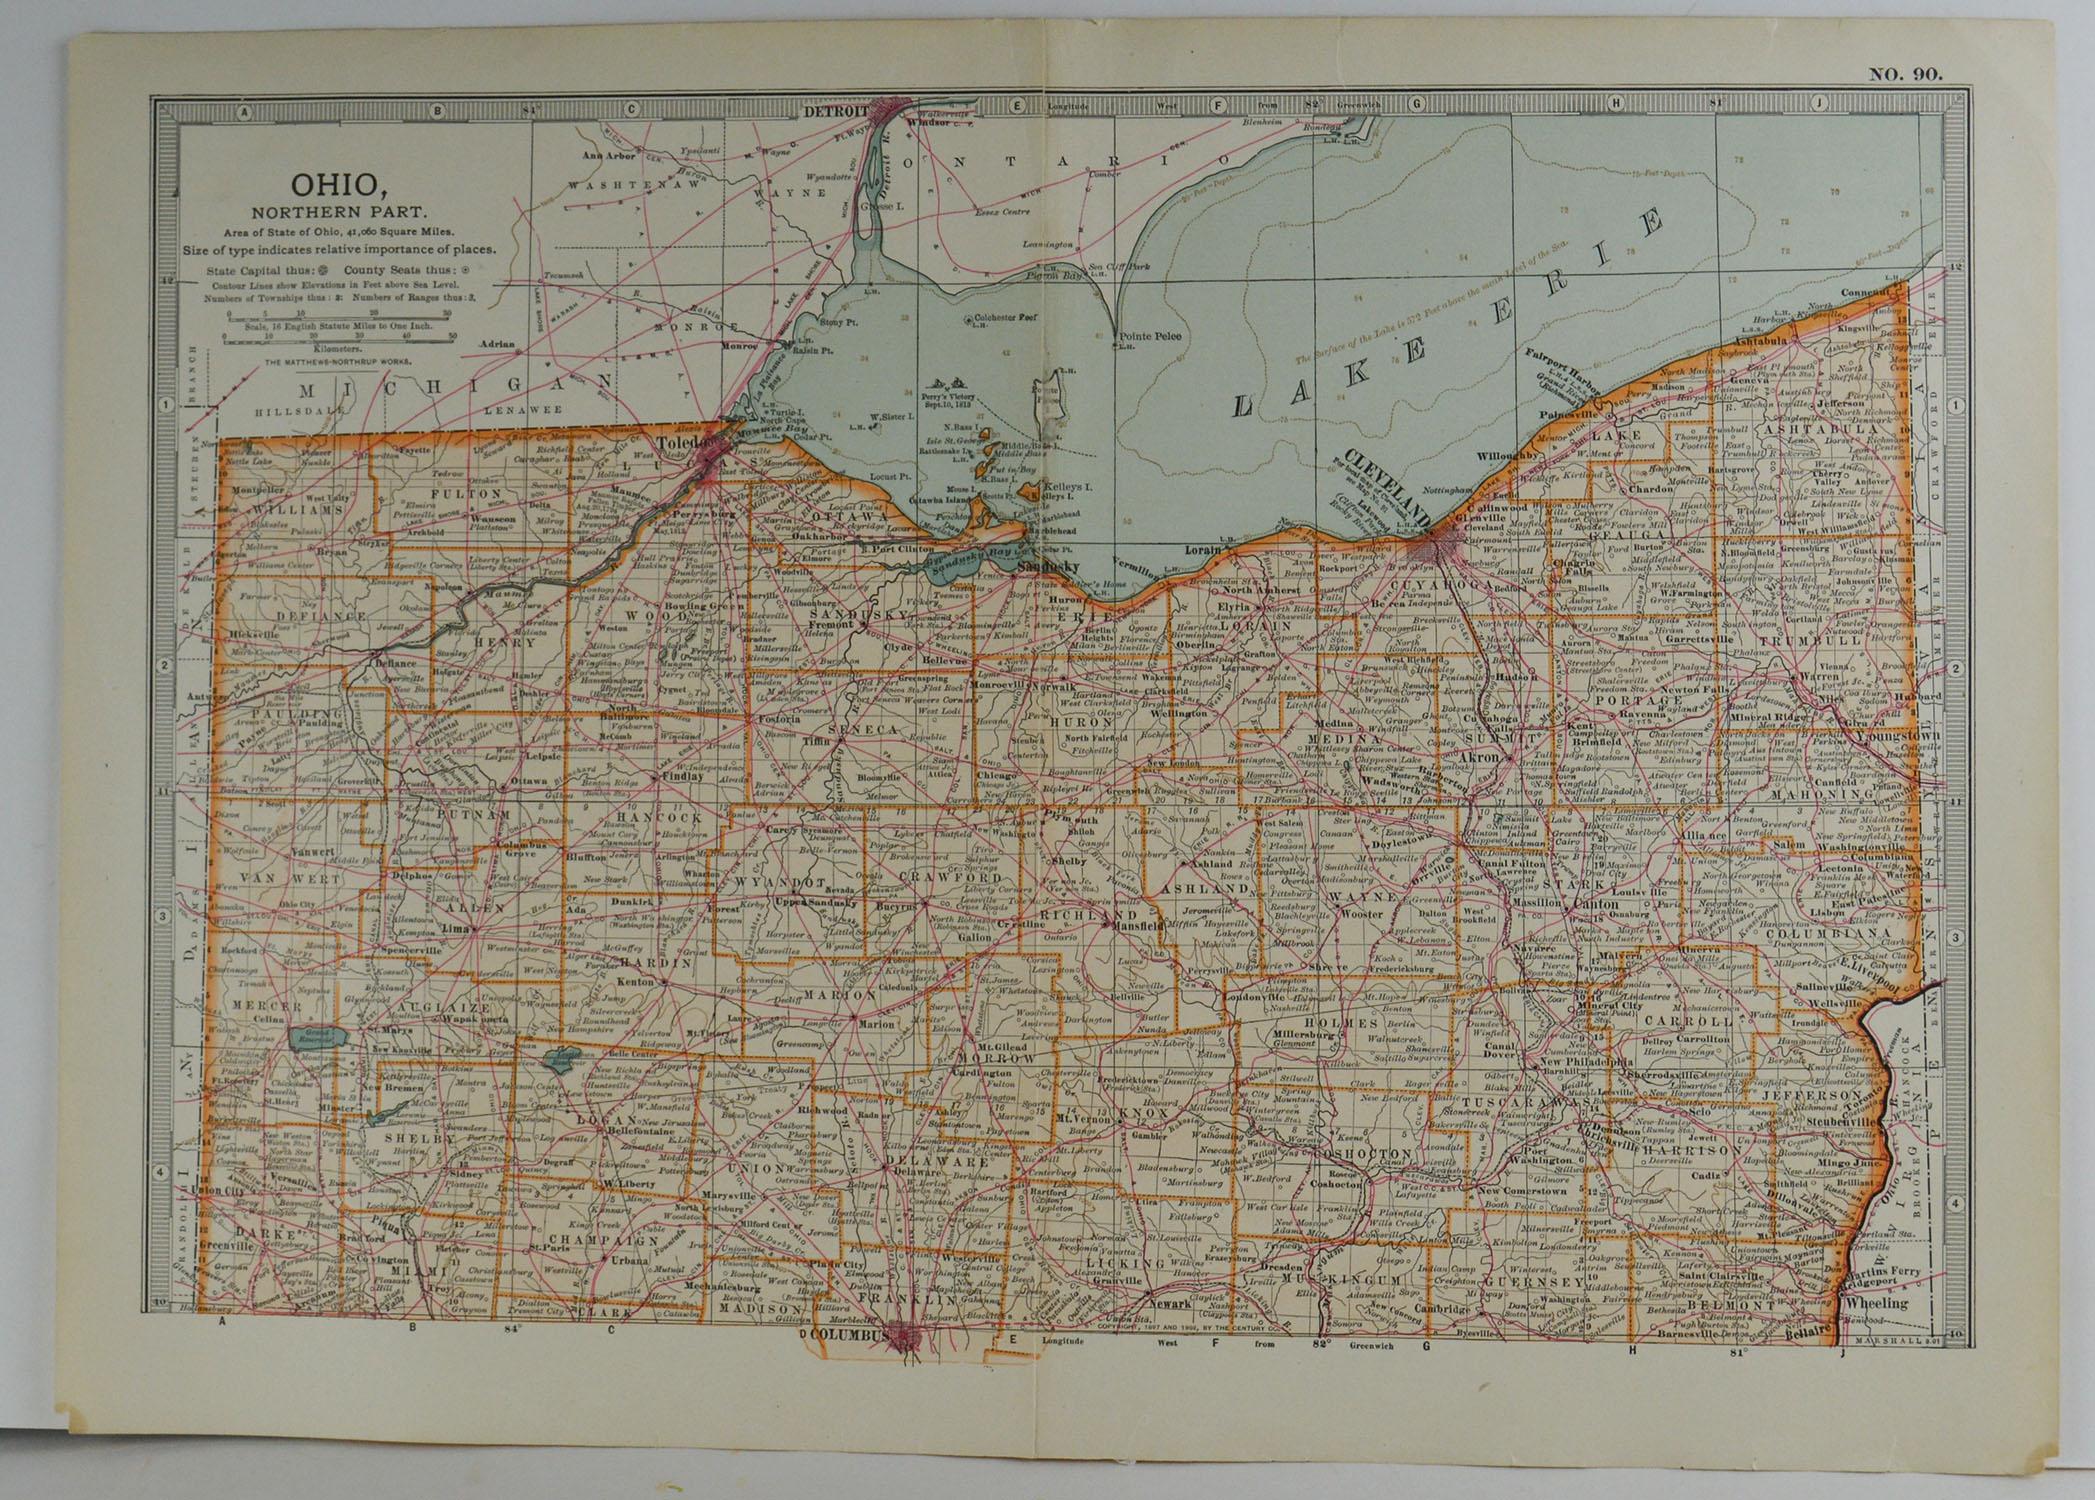 Other Original Antique Map of Ohio, circa 1890